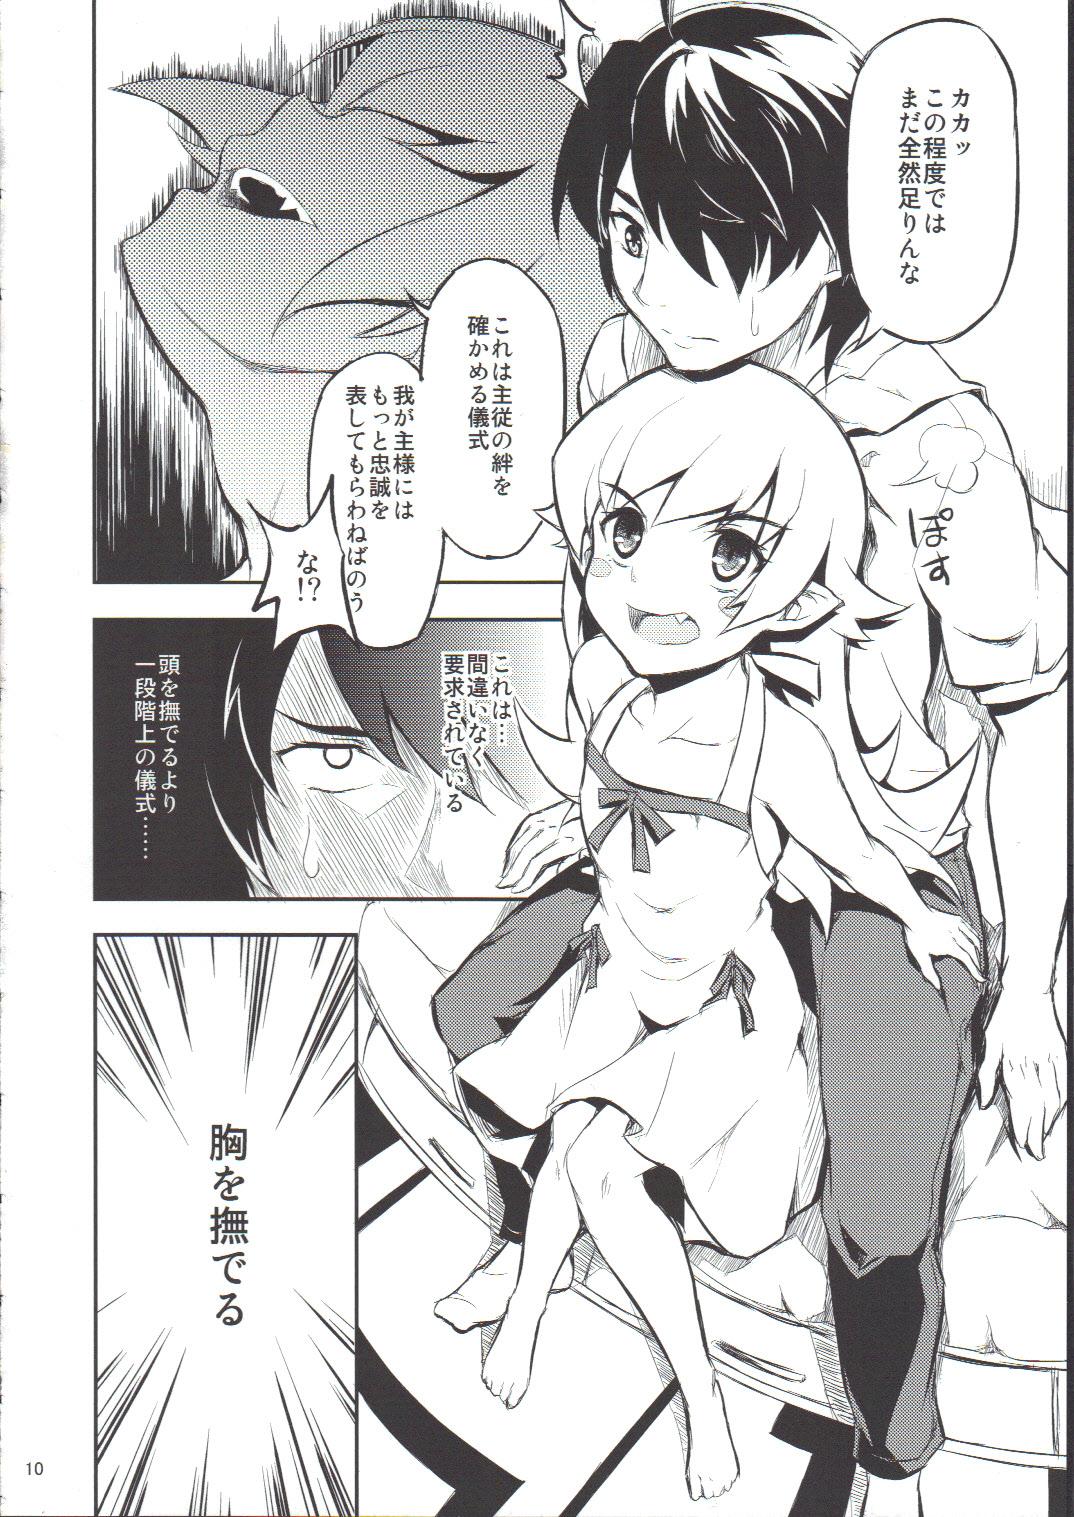 Uncensored Shinobu no Shinobu 2 - Bakemonogatari Con - Page 9